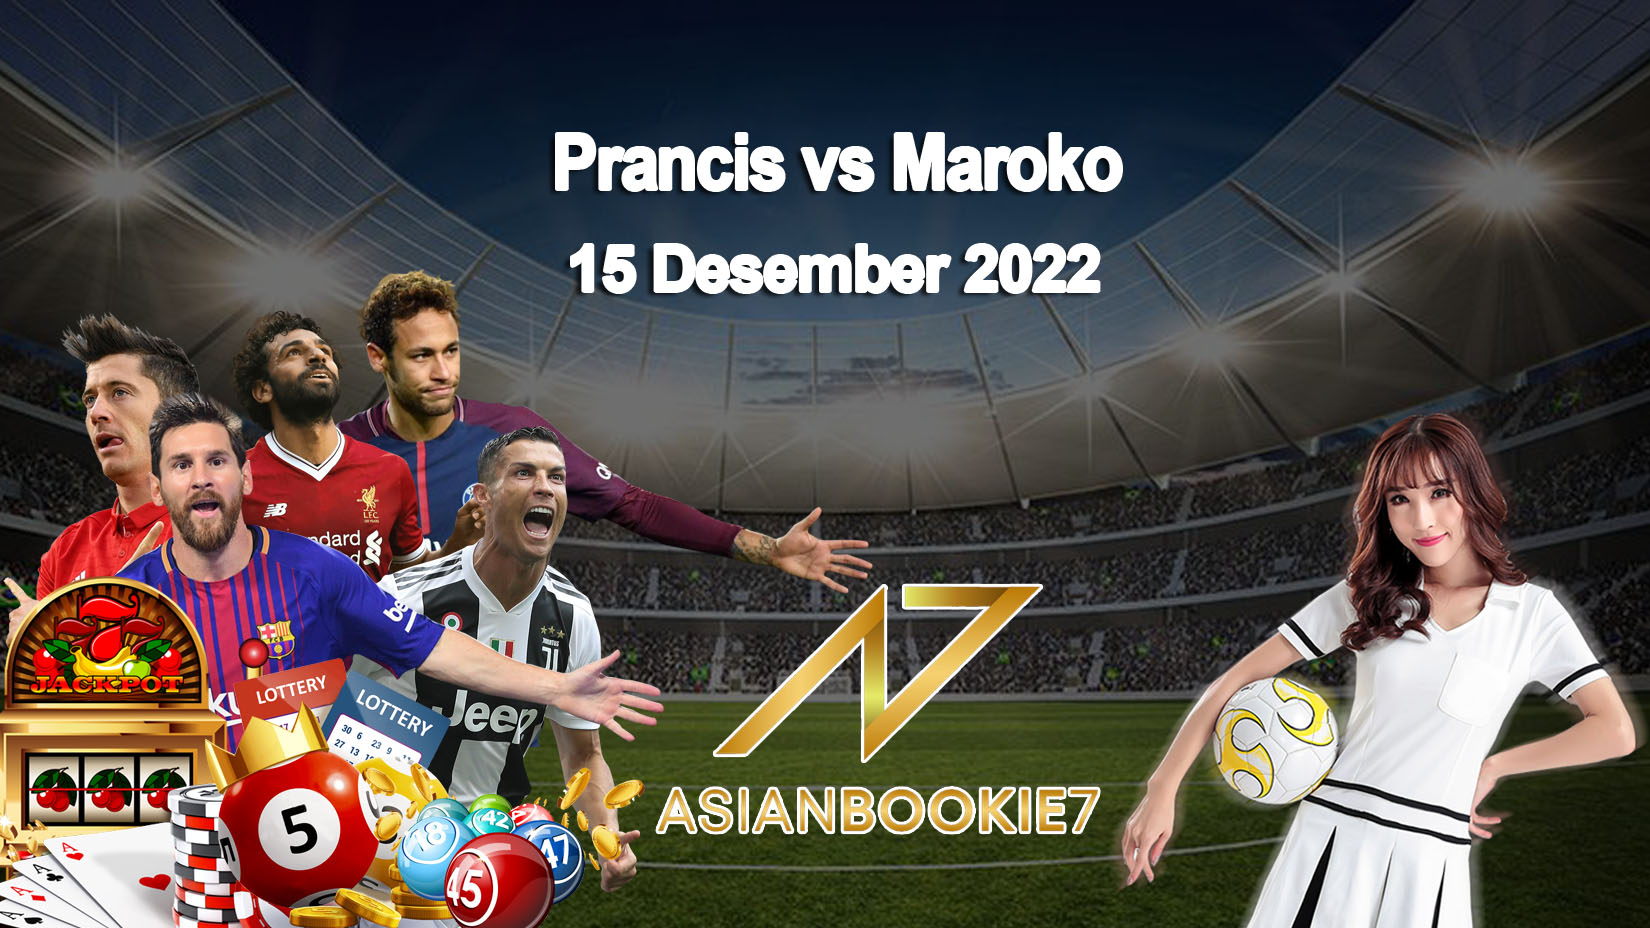 Prediksi Prancis vs Maroko 15 Desember 2022